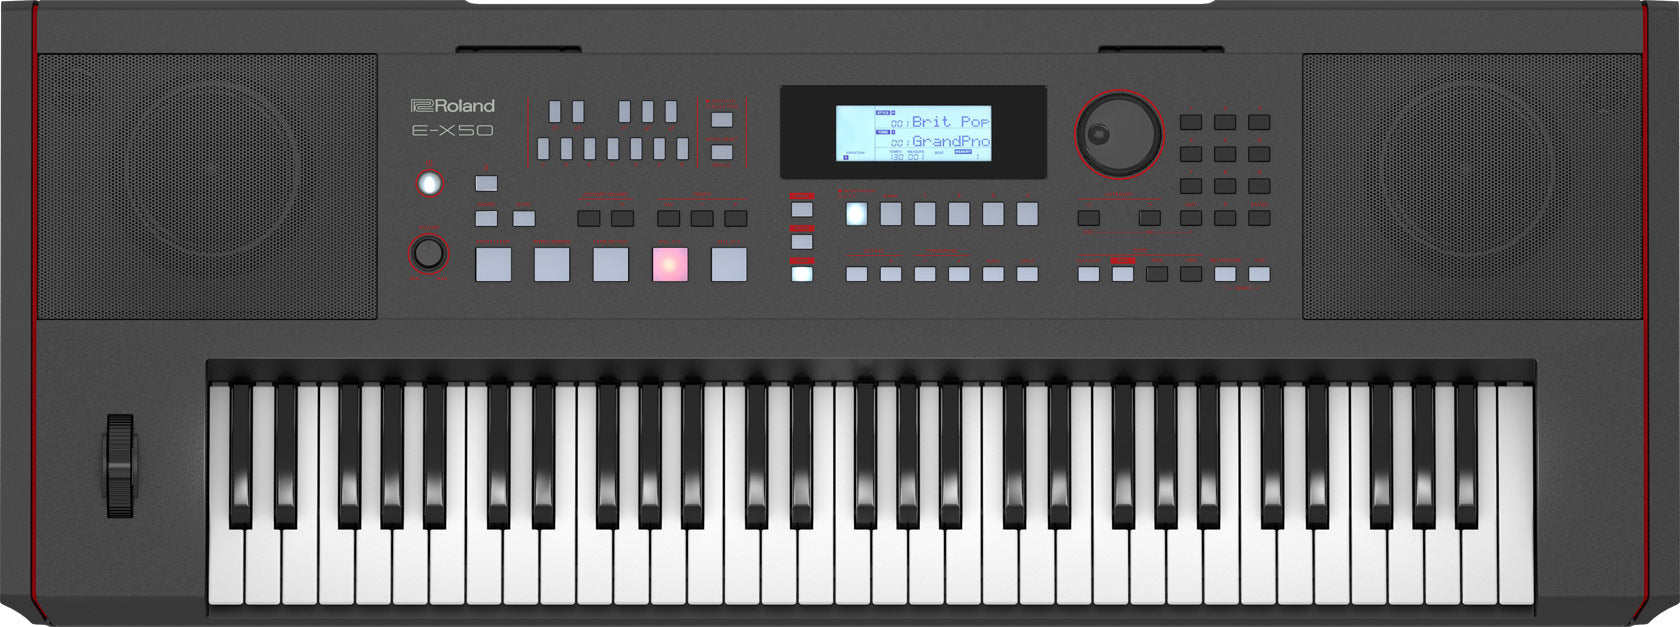 Roland E-X50 Clavier Arrangeur 61 Notes